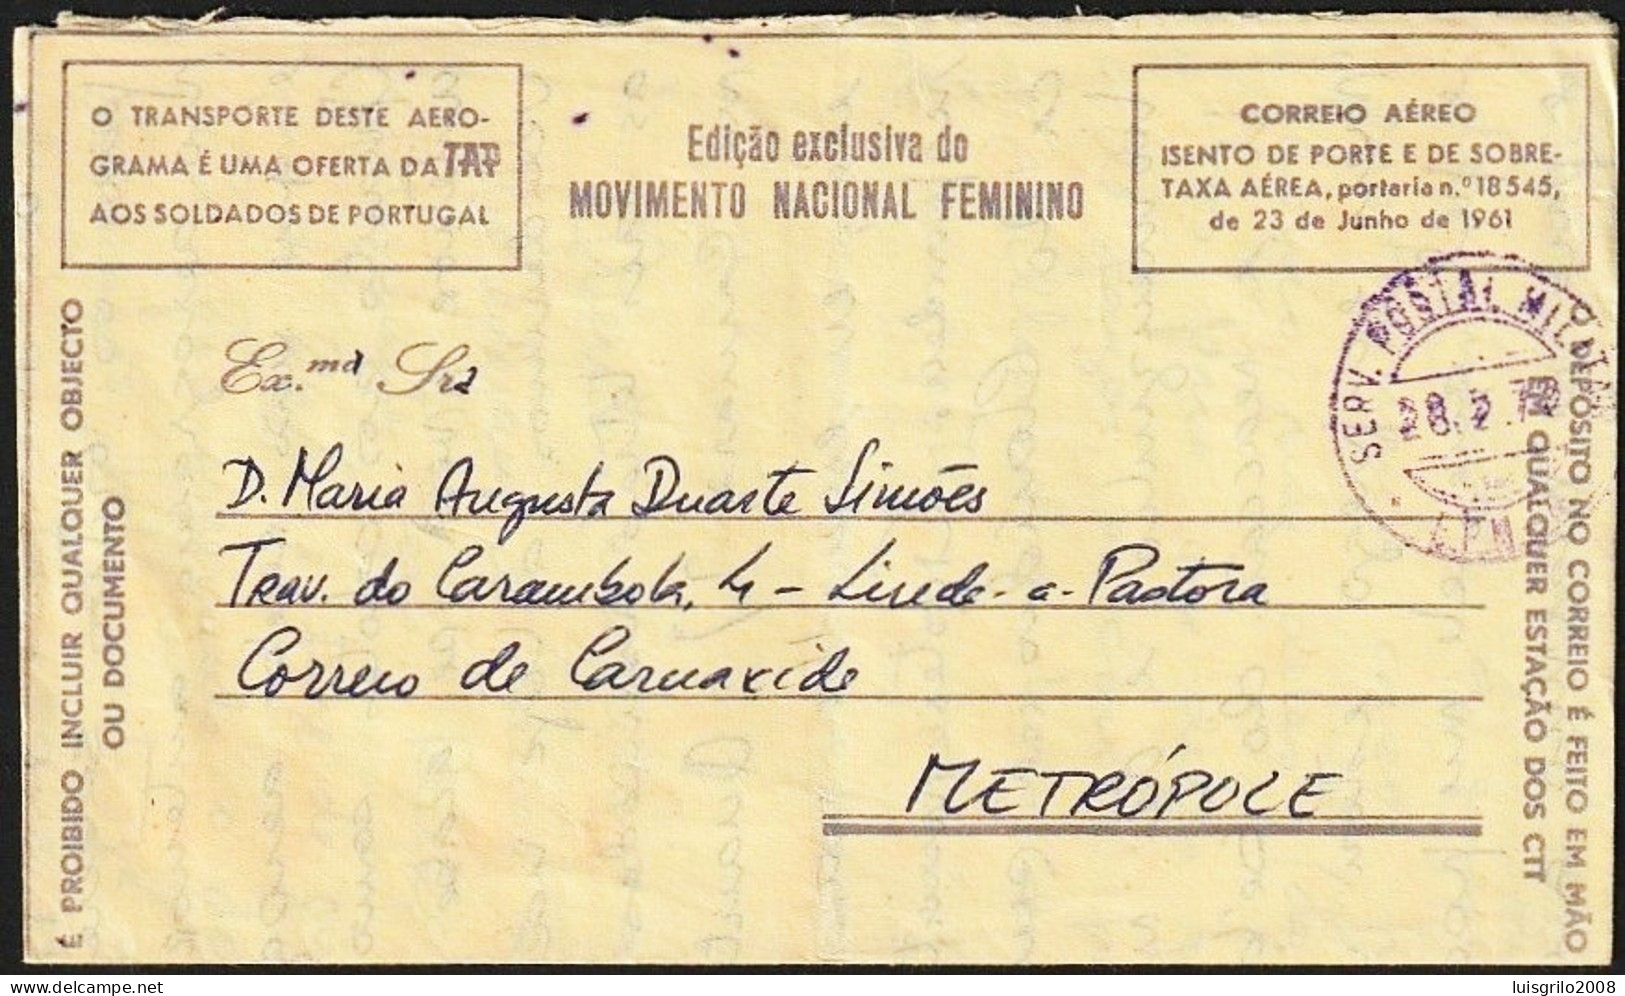 Aerogramme/ Aerograma Militar - Mozambique > Carnaxide, Portugal -|- Postmark - Serv. Postal Militar 4, 1972 - Briefe U. Dokumente